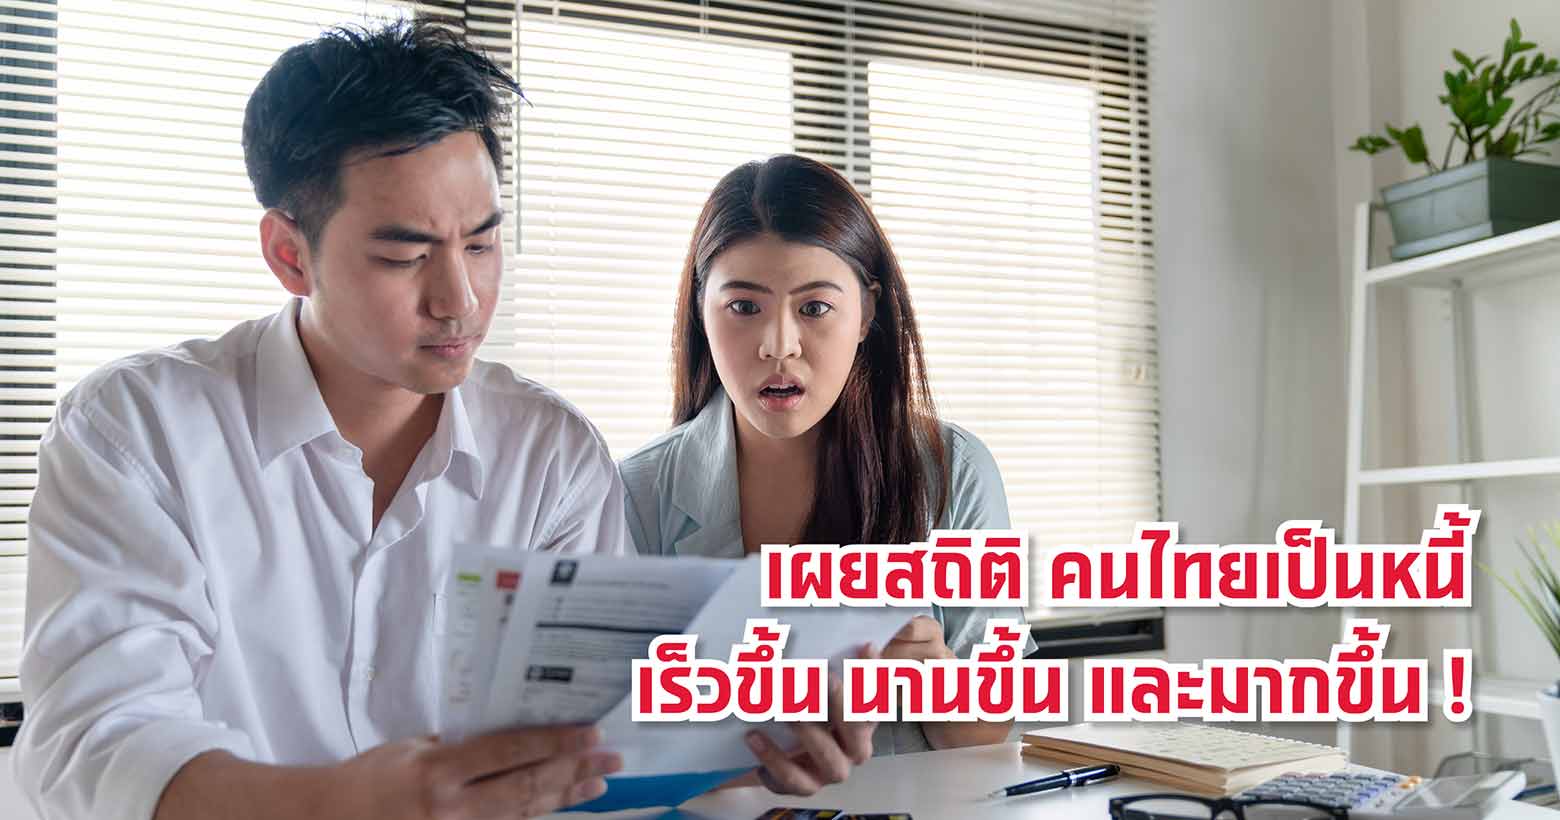 เผยสถิติคนไทยเป็นหนี้เร็วขึ้นนานขึ้น และมากขึ้น !